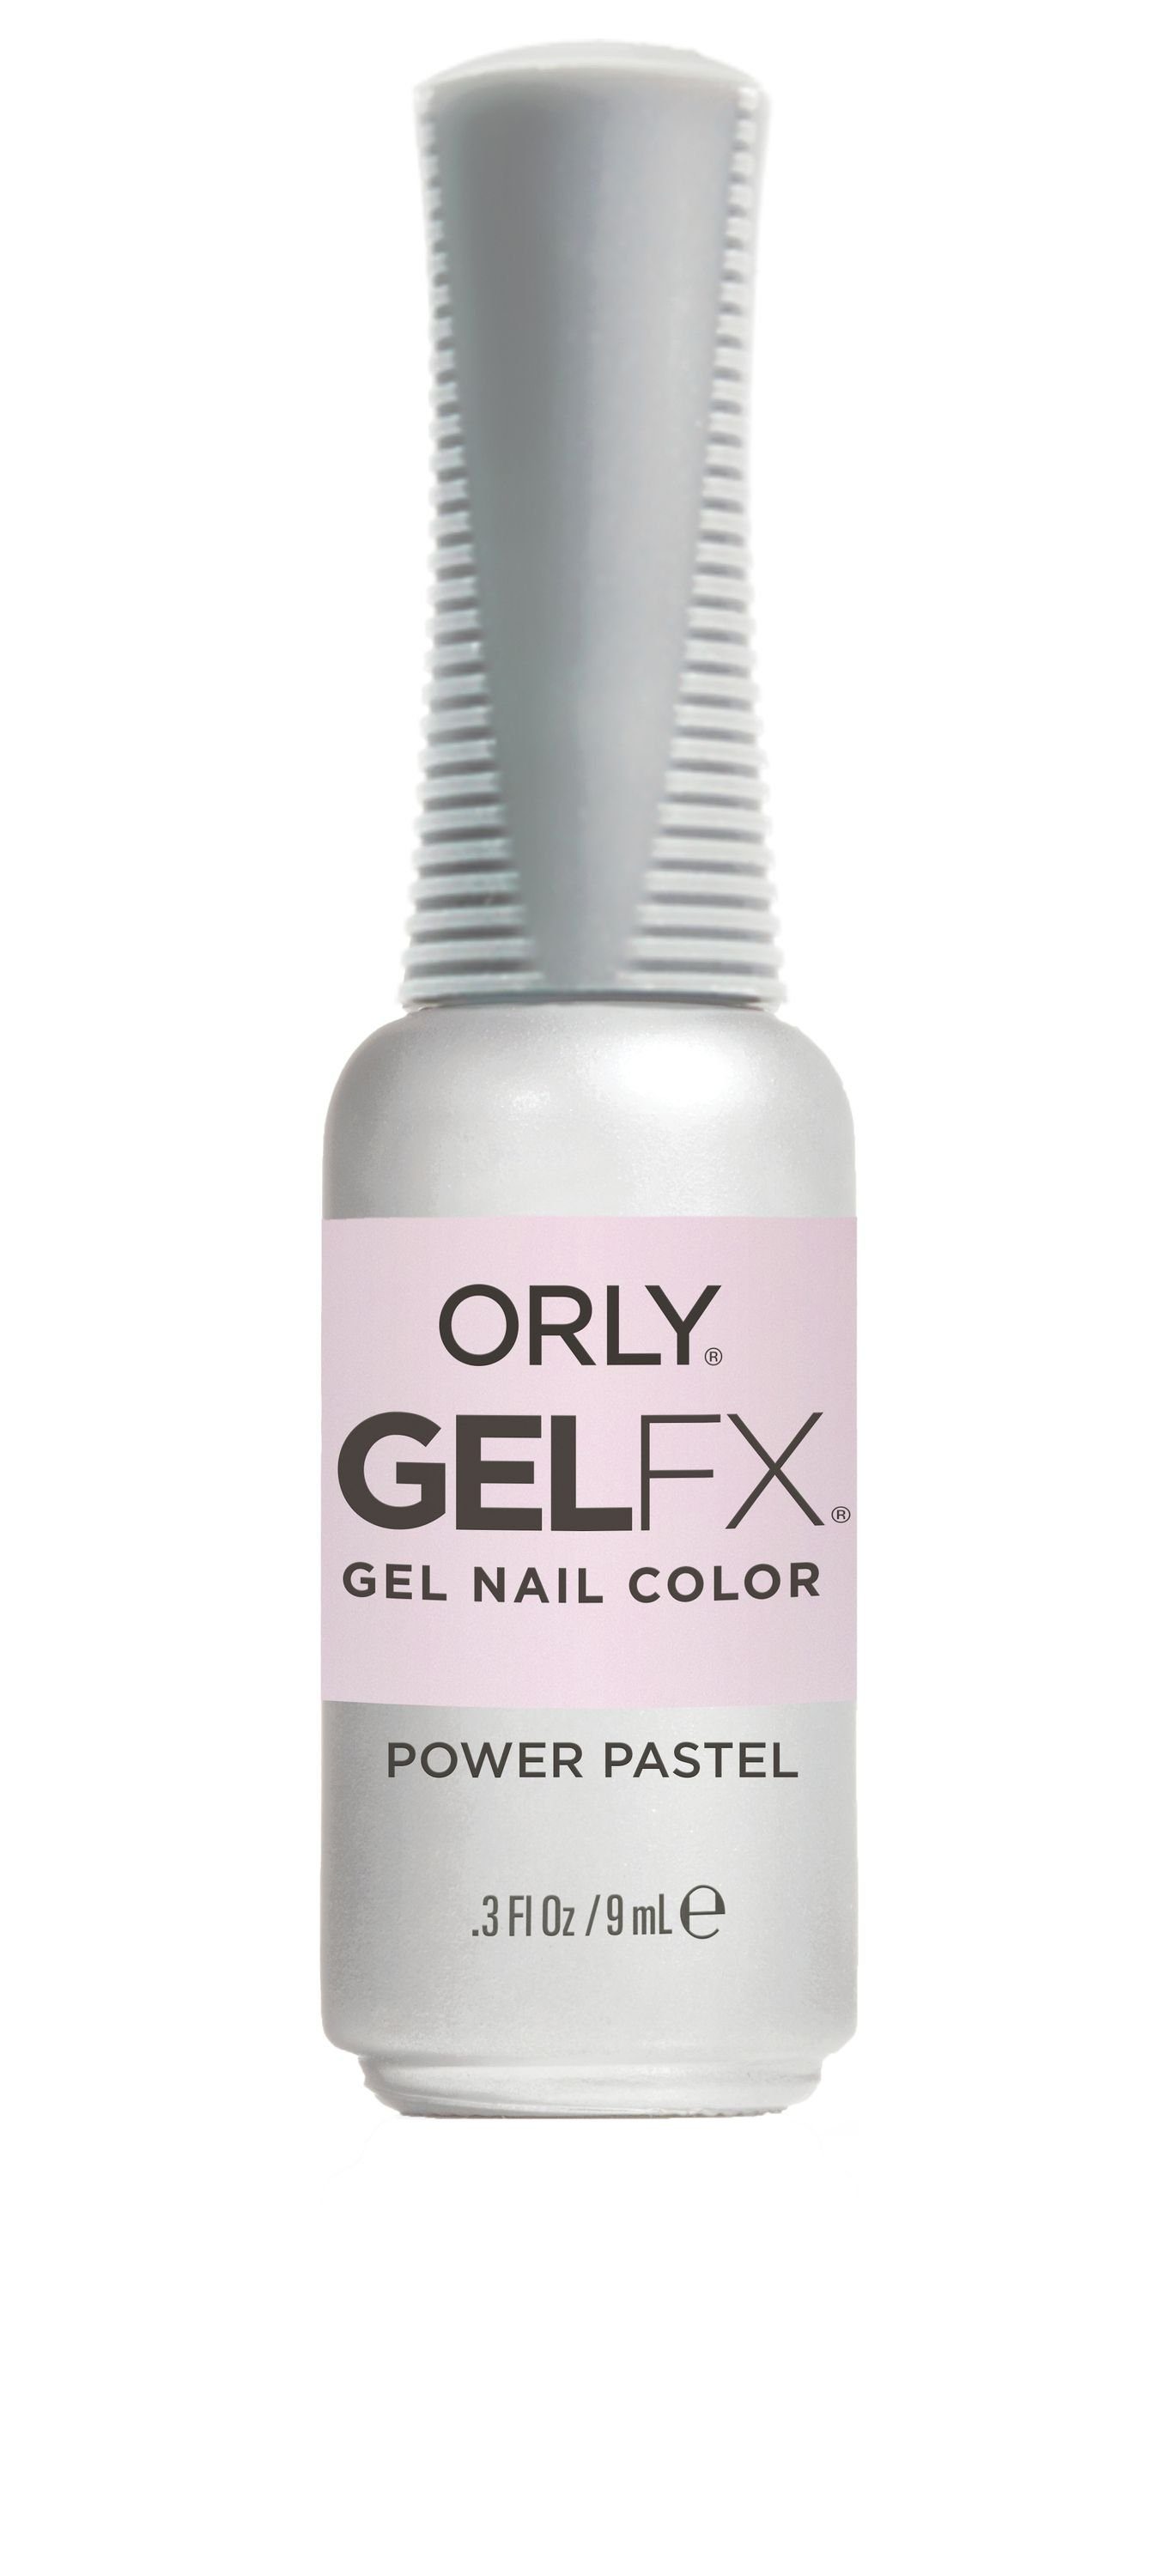 ORLY UV-Nagellack GEL FX Power Pastel, 9ML